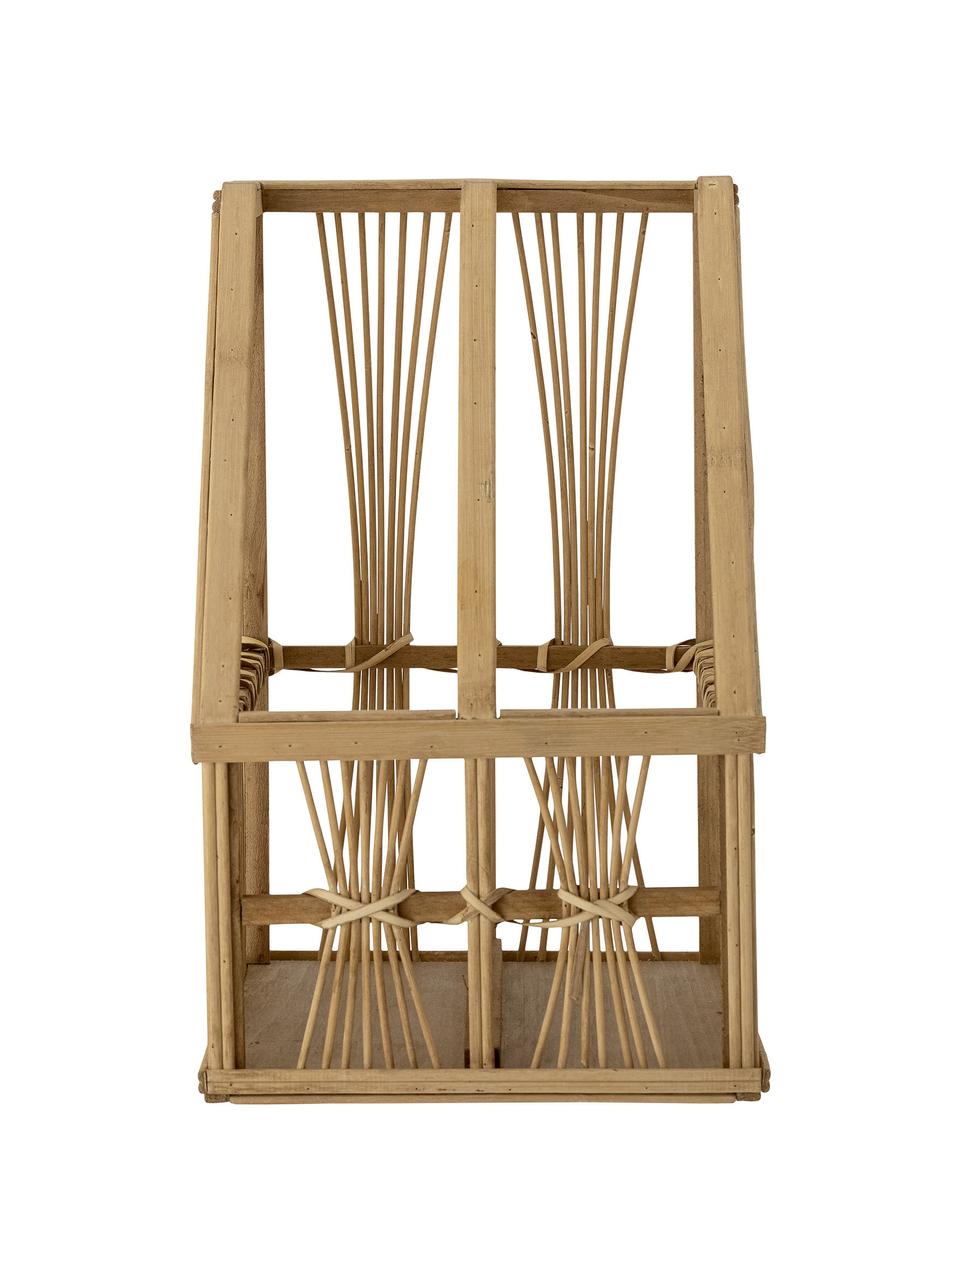 Portariviste in bambù e rattan Tobi, Bambù, rattan, legno di abete, compensato, Marrone, Larg. 21 x Alt. 34 cm